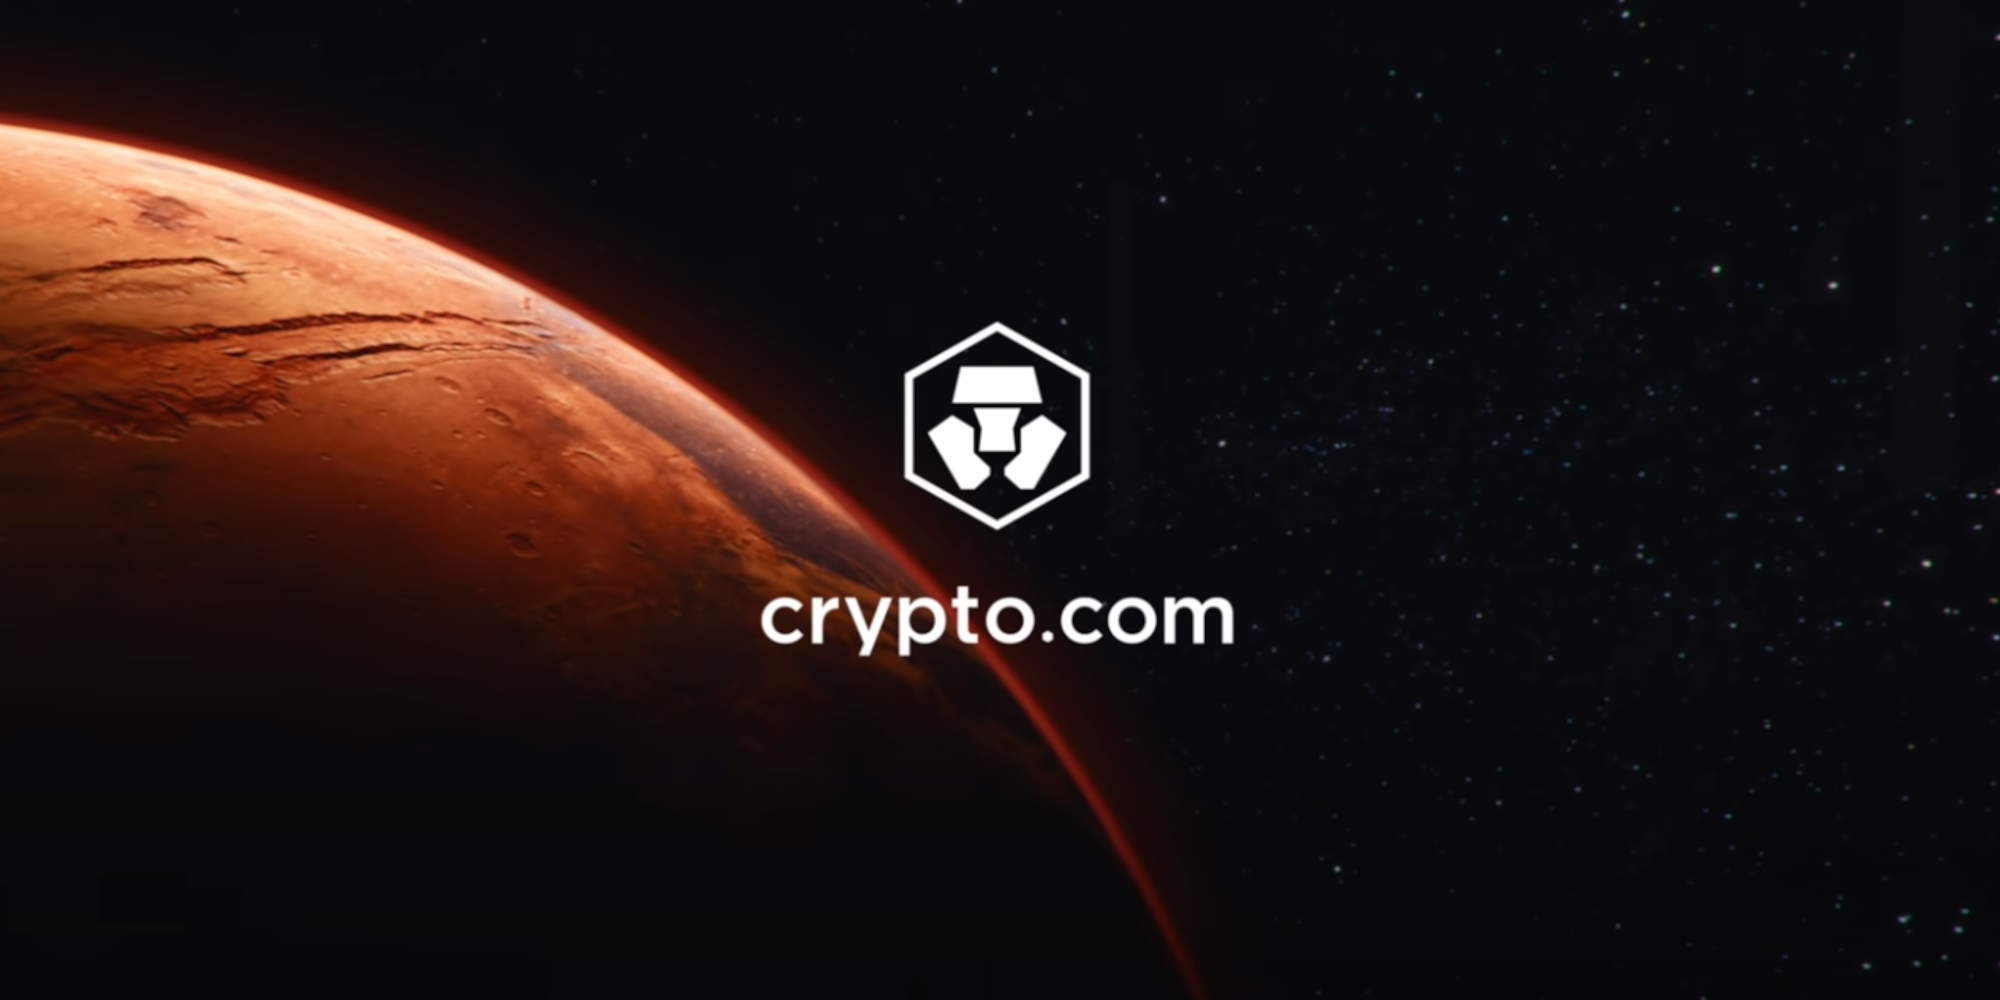 Η εταιρεία Crypto.com που πέταξε 10.5 εκατομμύρια